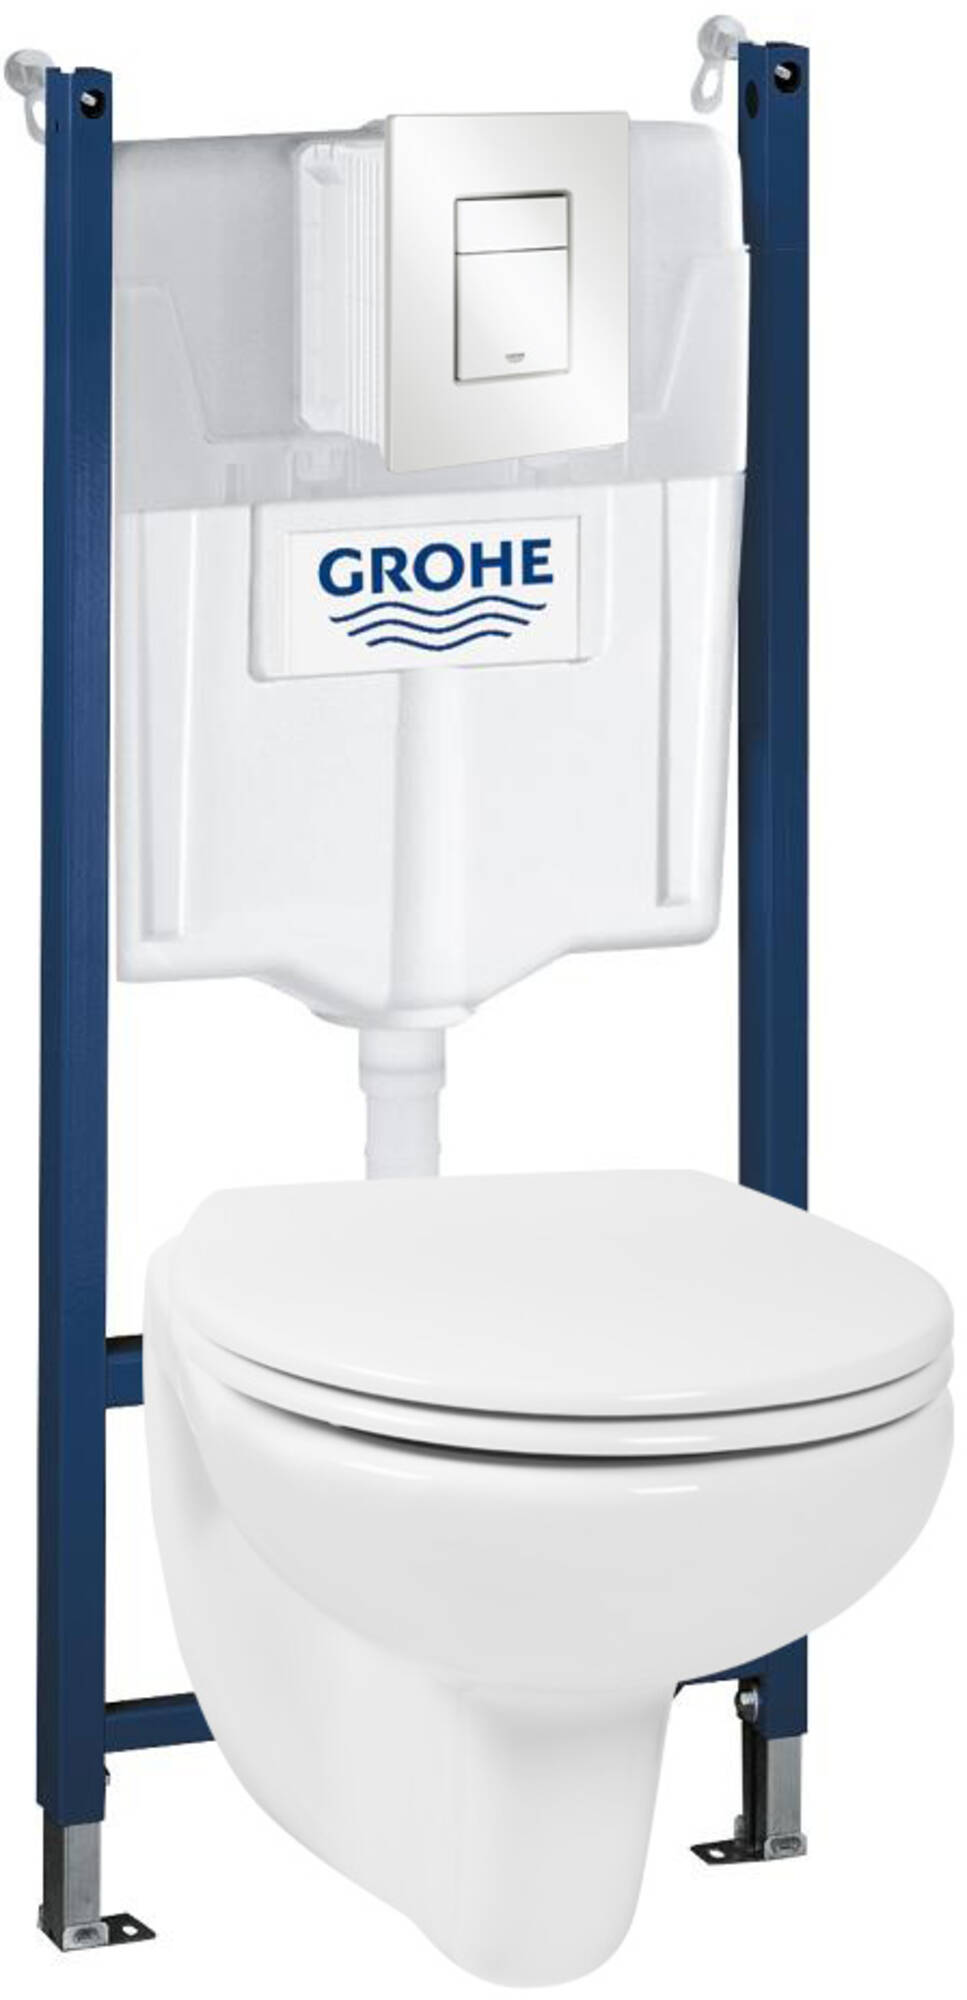 Grohe toiletset met softclose en quickrelease hangtoilet, wit bedieningspaneel en Rapid SL inbouwreservoir